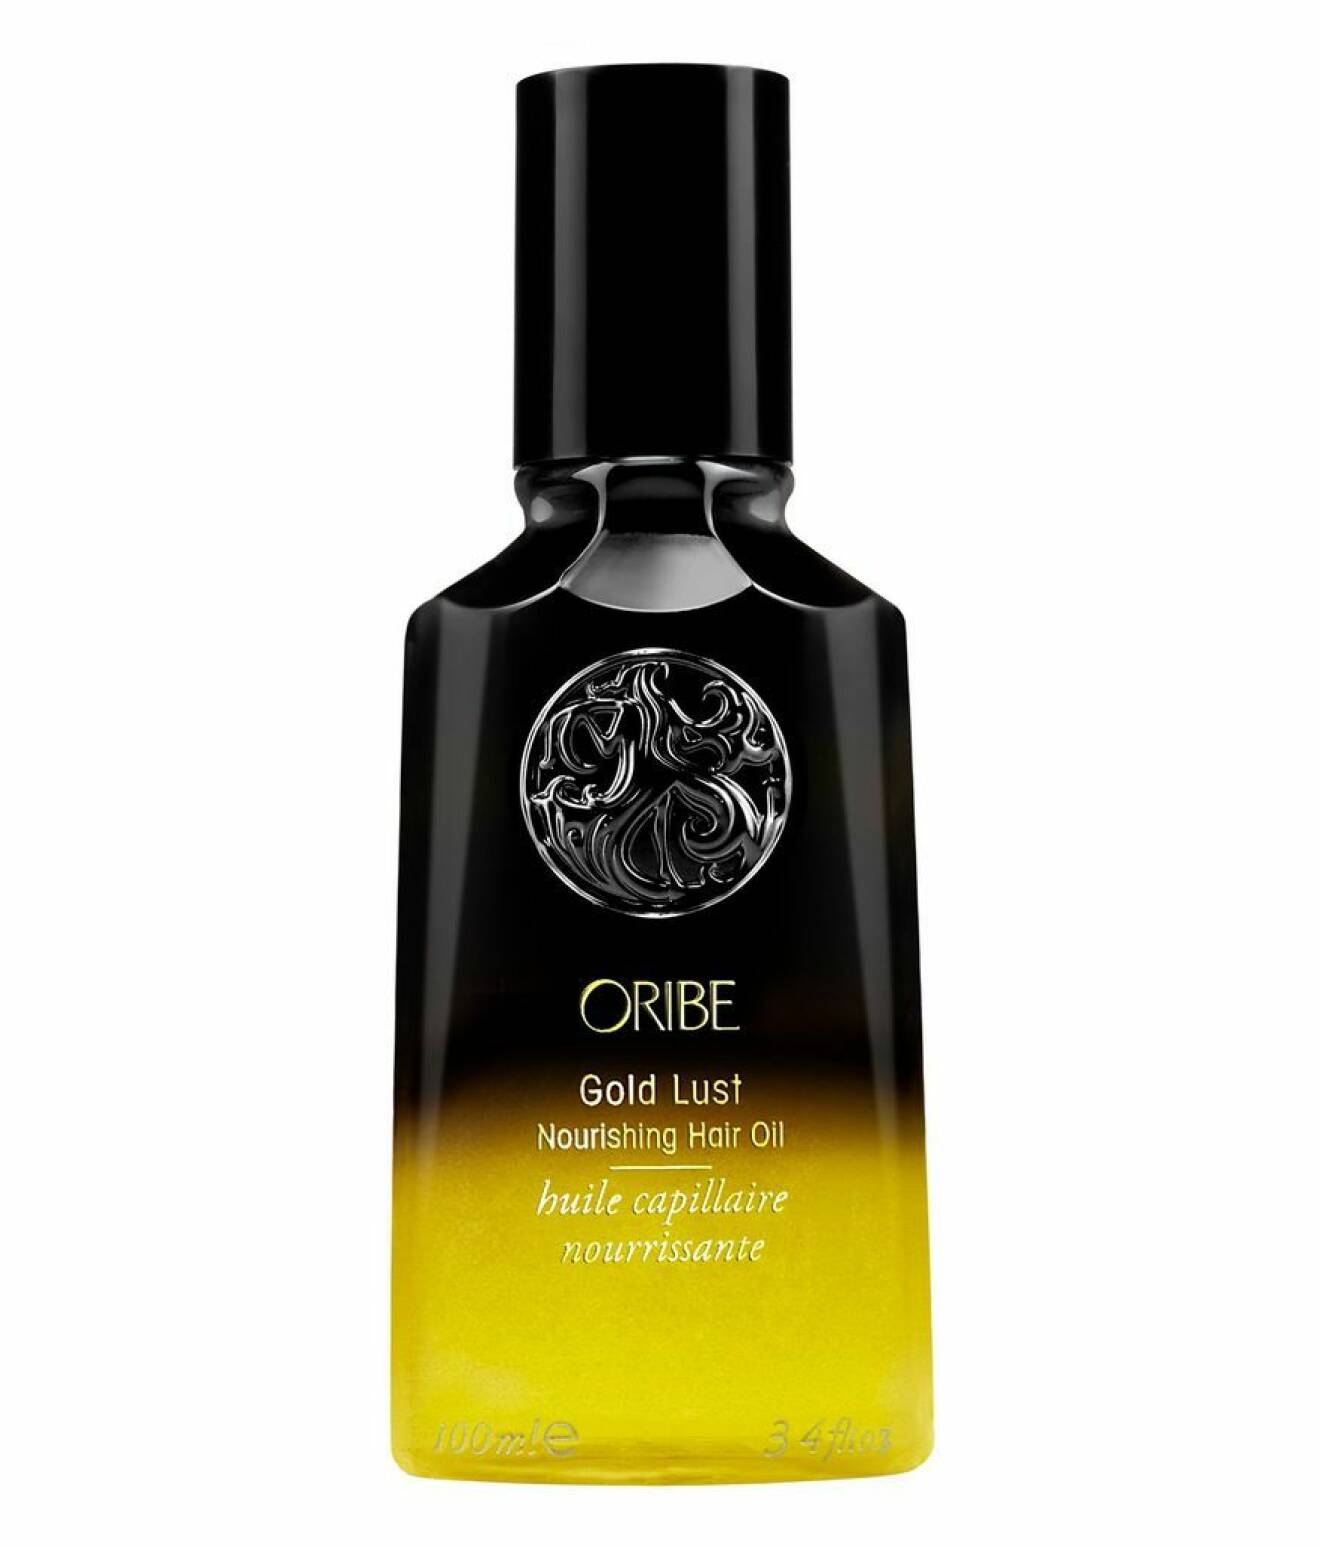 Gold lust nourishing hair oil från Oribe.